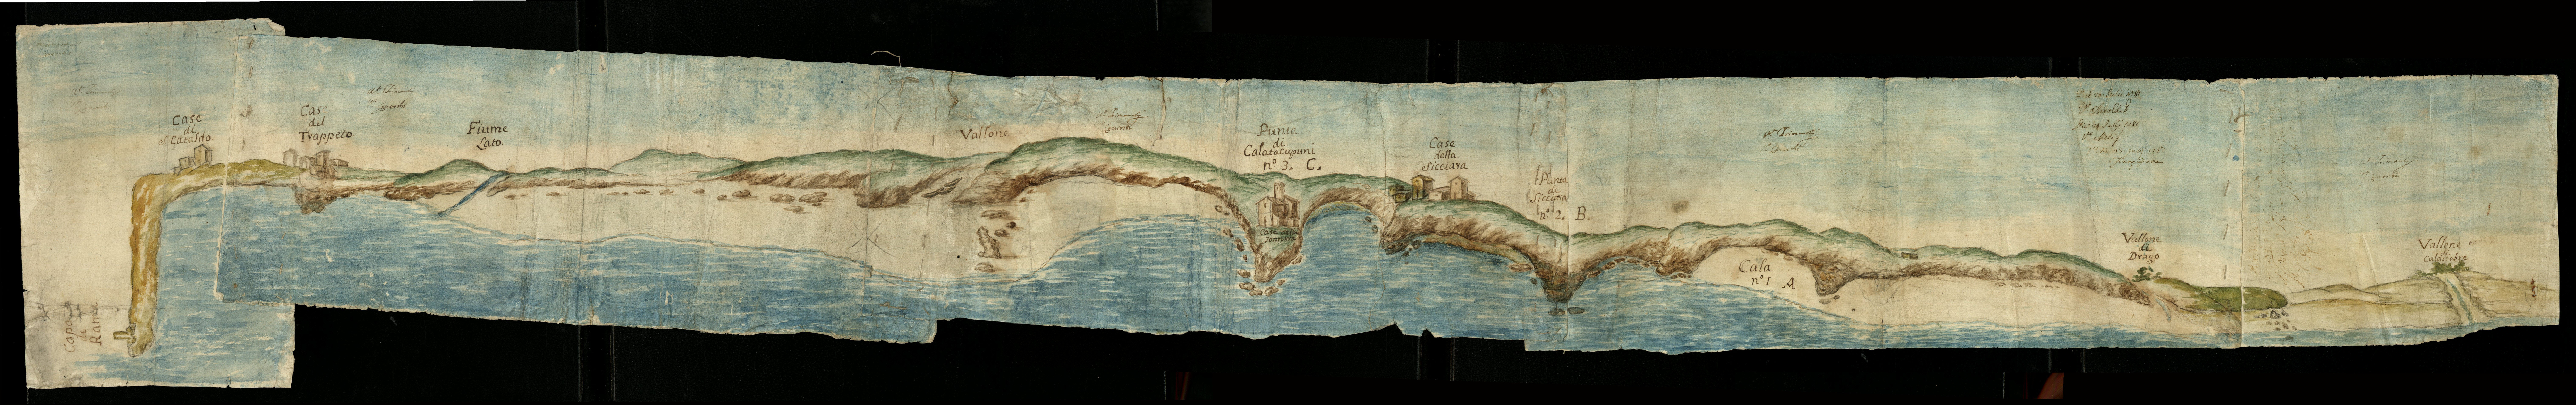 Carta topografica della fascia costiera da Capo di Rama fino al vallone di Calatubo